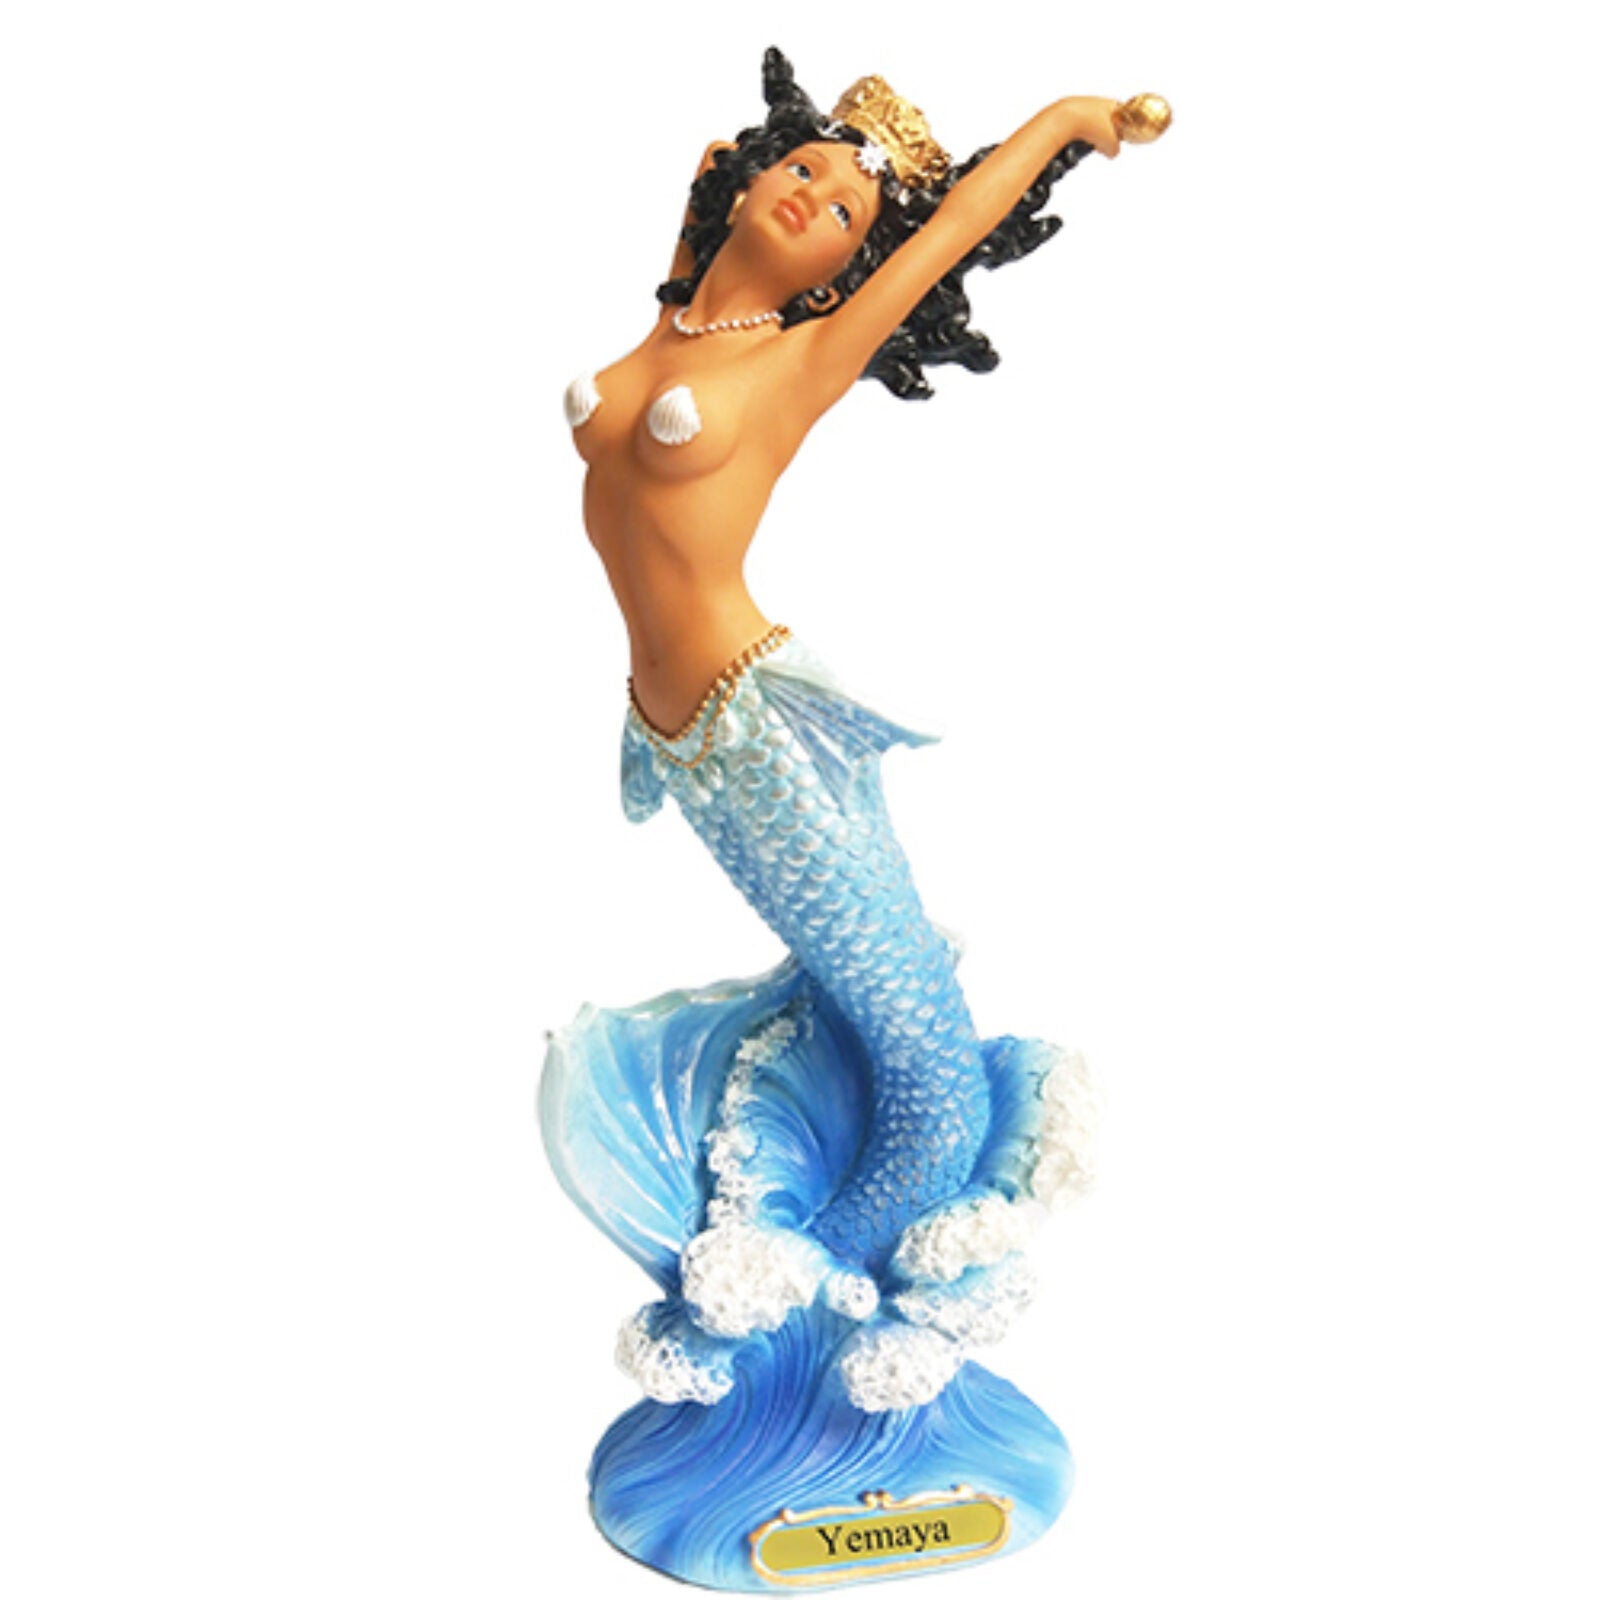 Yemaya Mermaid Statue 12"